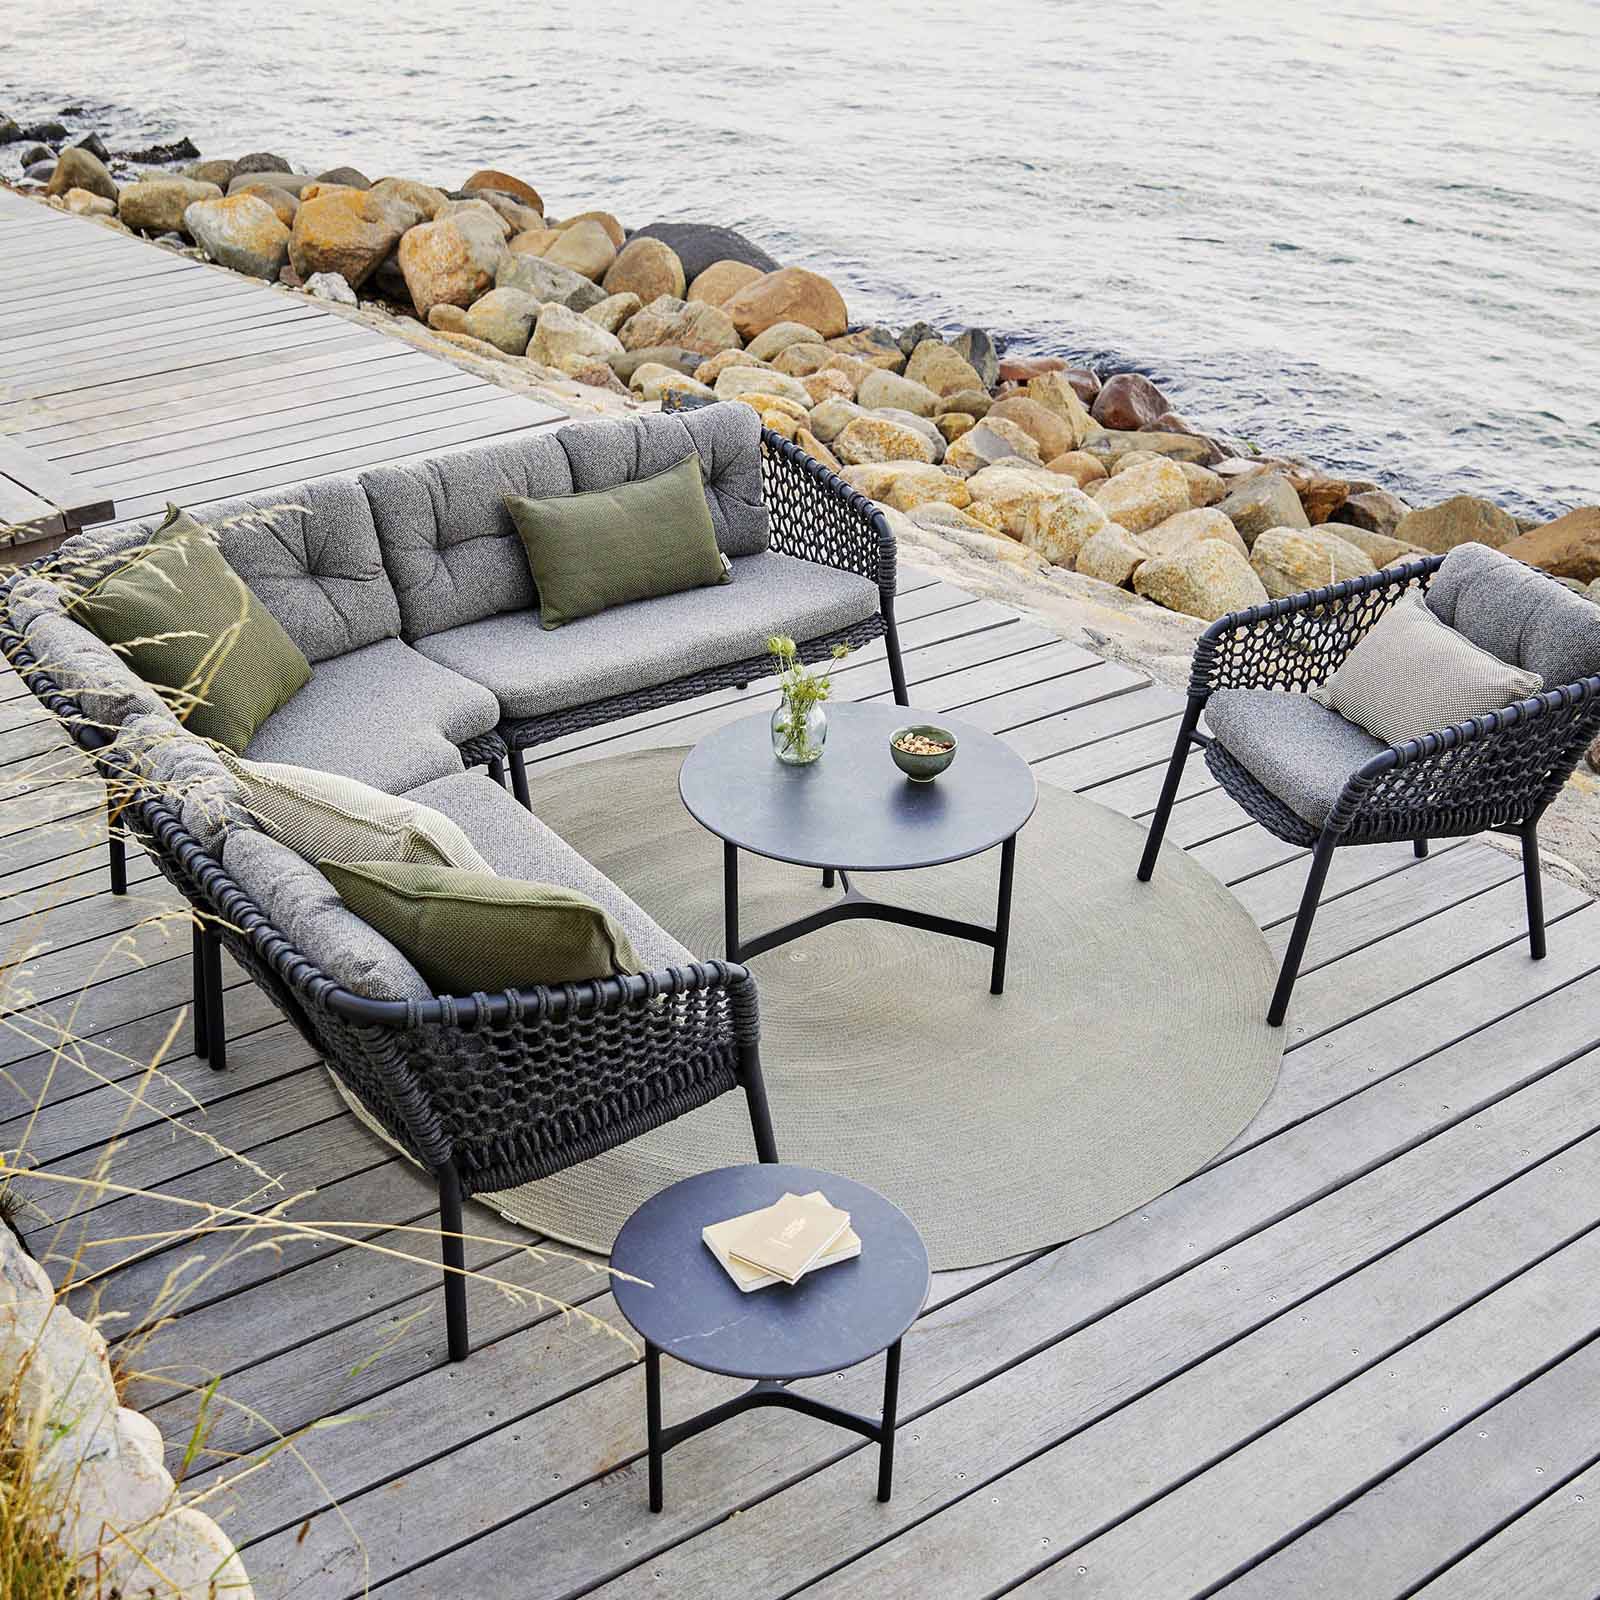 Ocean 2-Sitzer Sofa-Modul für rechts aus Cane-line Soft Rope in Dark Grey mit Kissen aus Cane-line Wove in Dark Grey